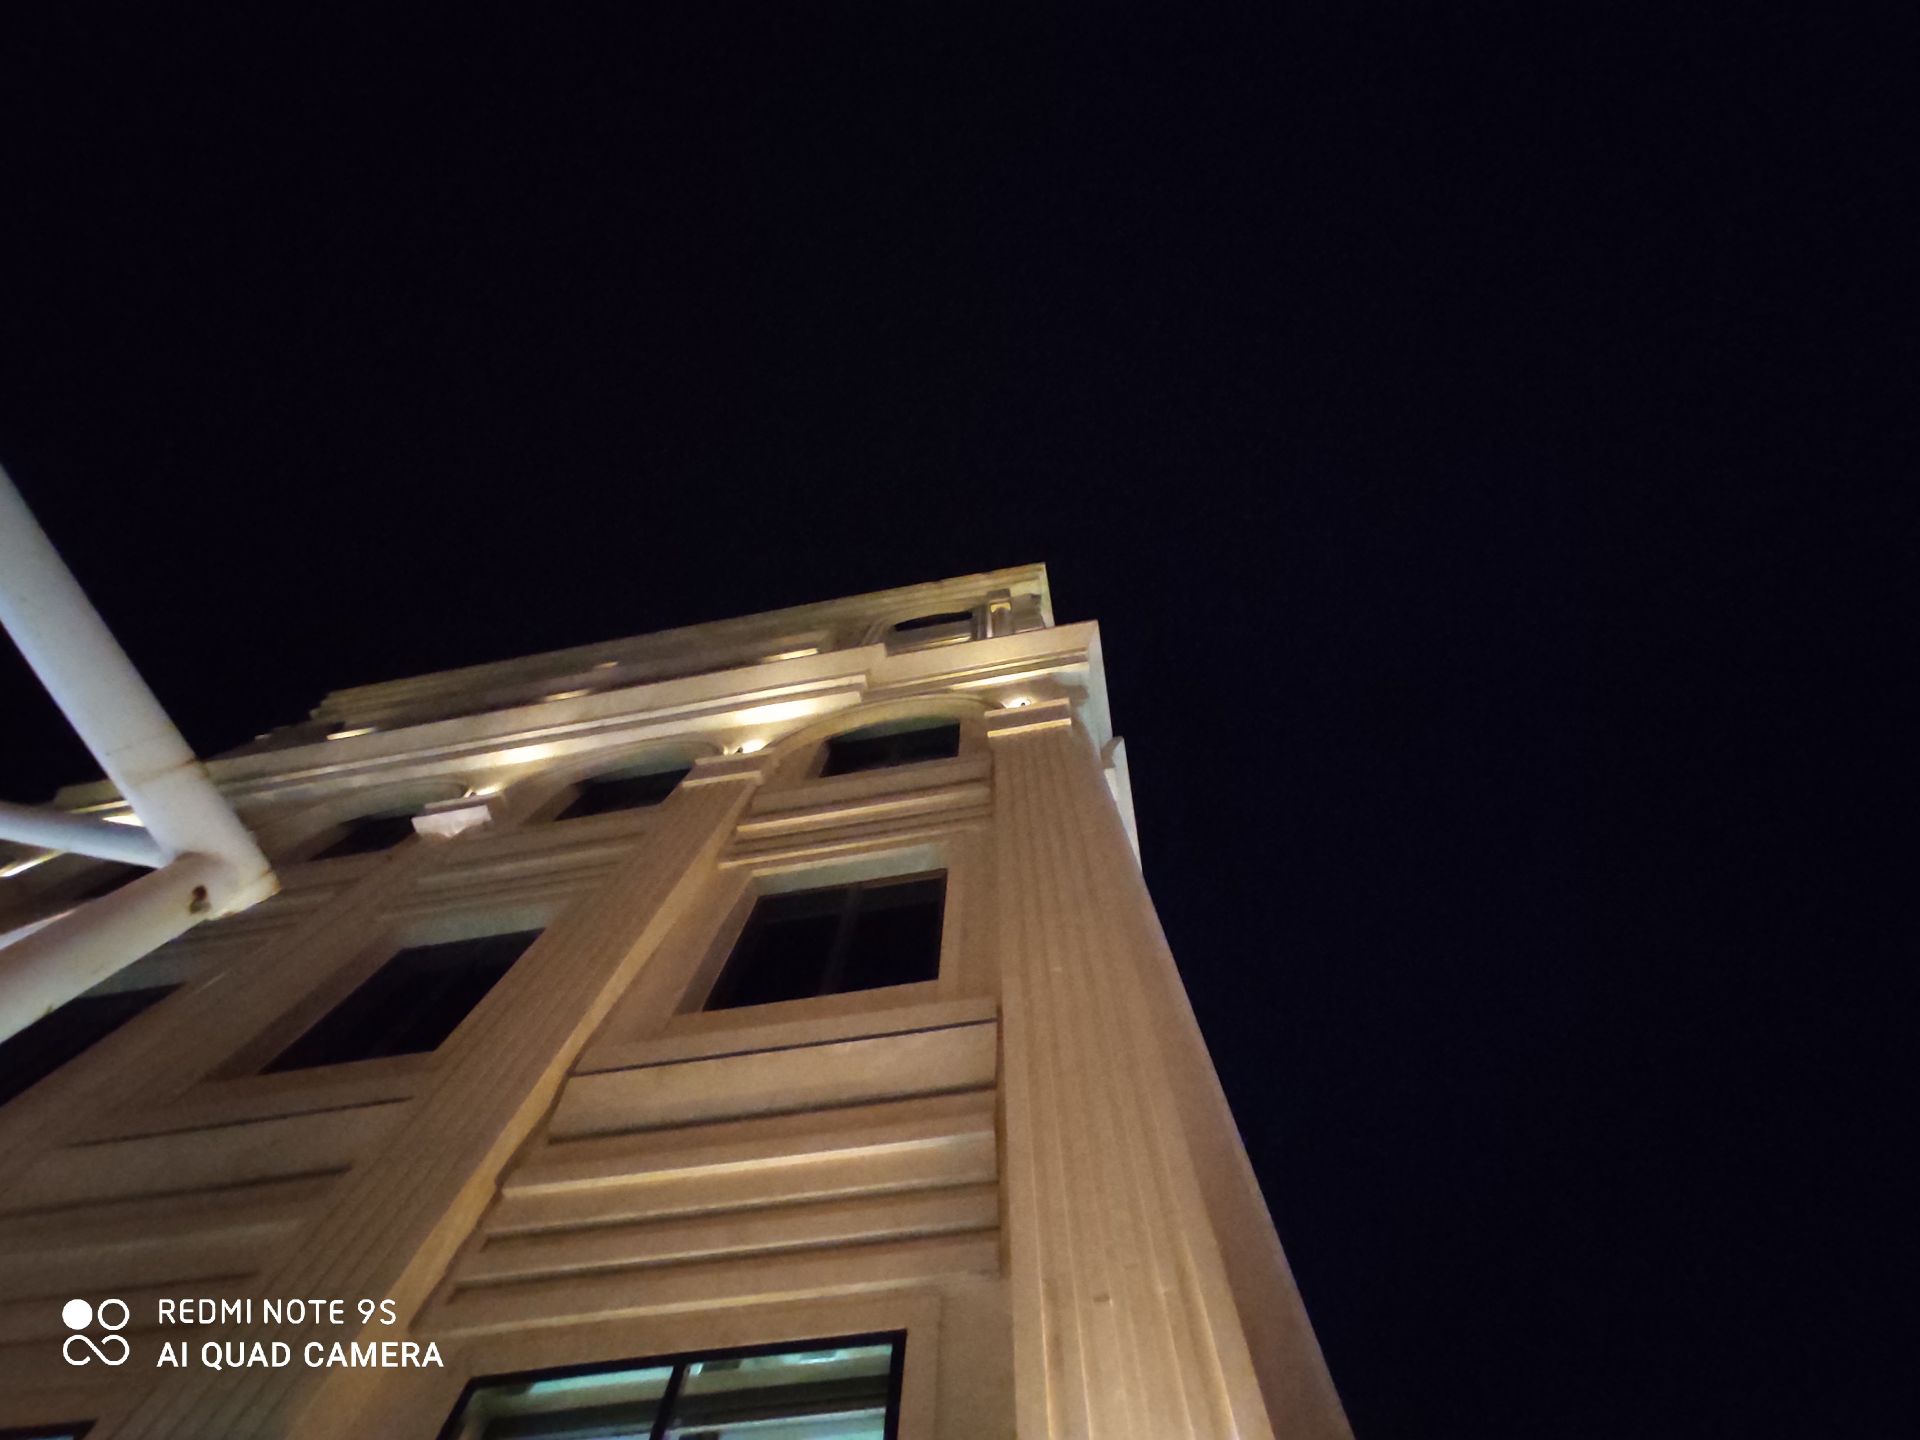 نمونه عکس ردمی نوت 9 اس - نمای فوق عریض یک ساختمان در تاریکی